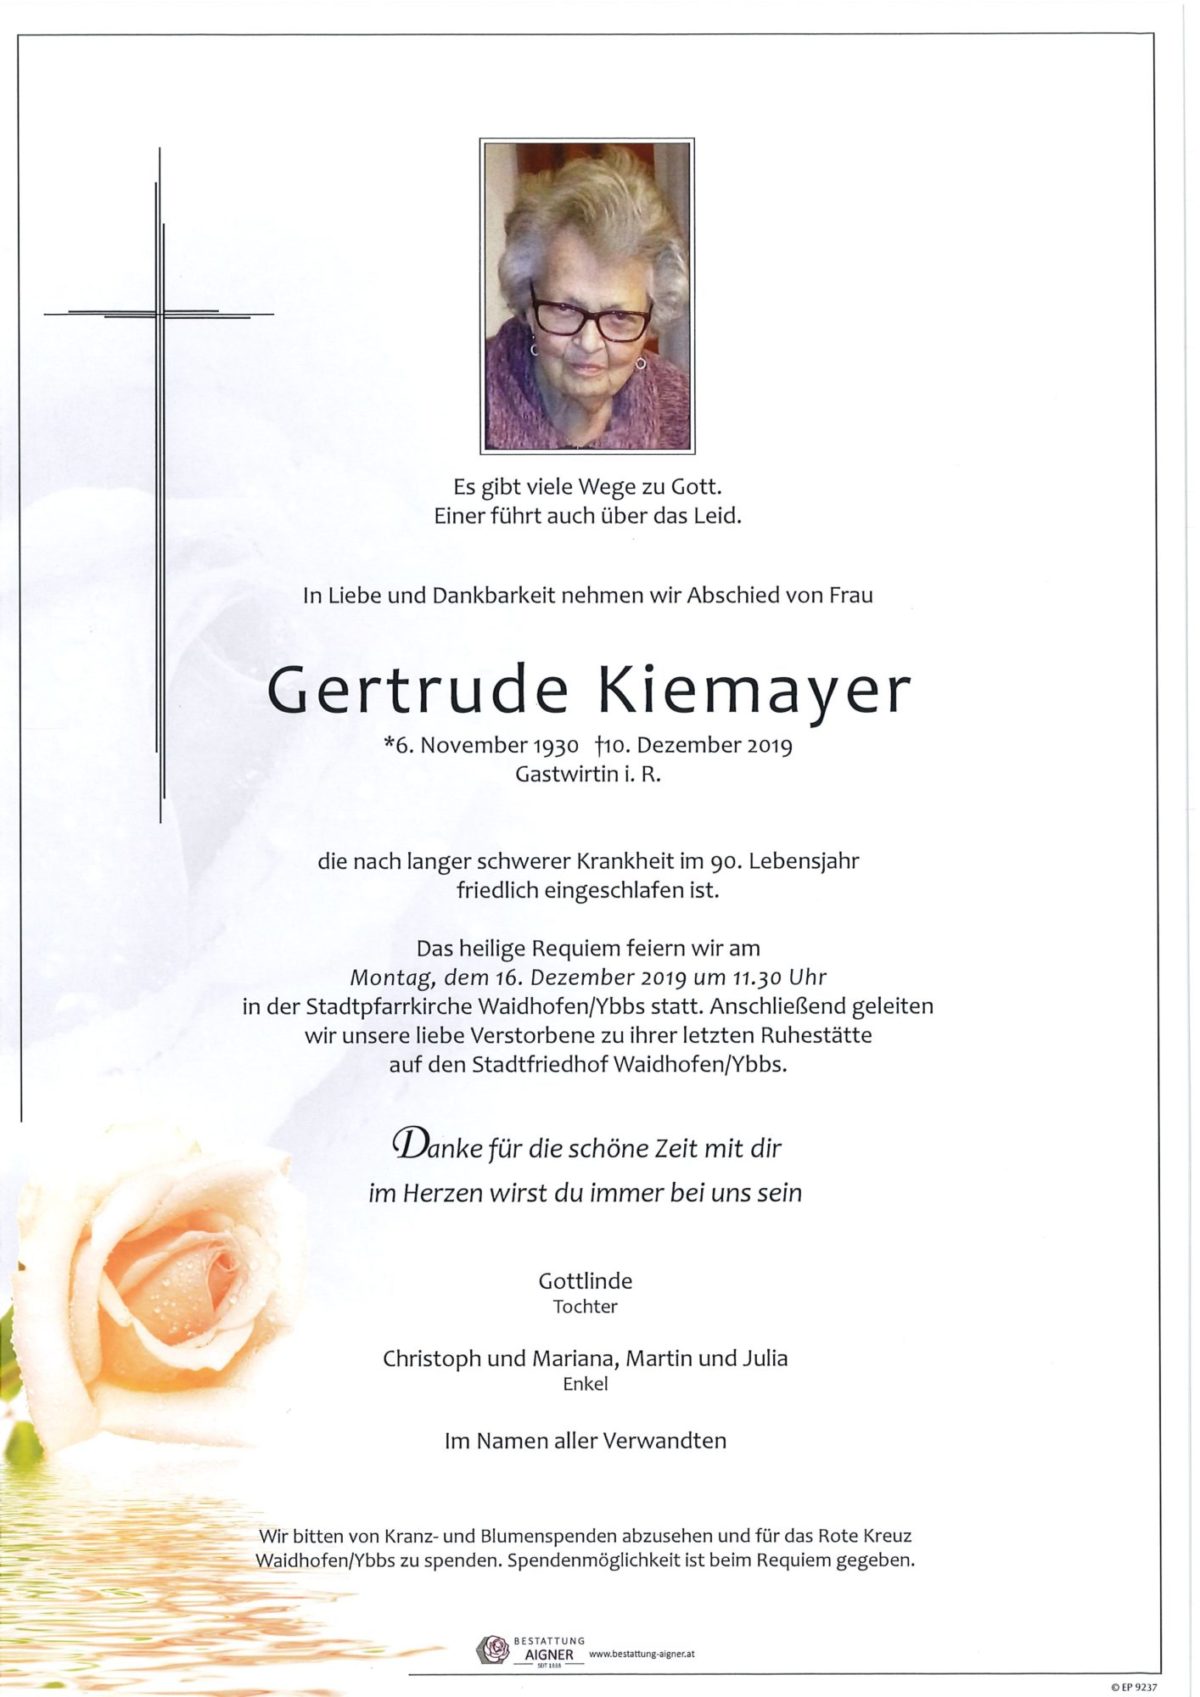 Gertrude Kiemayer